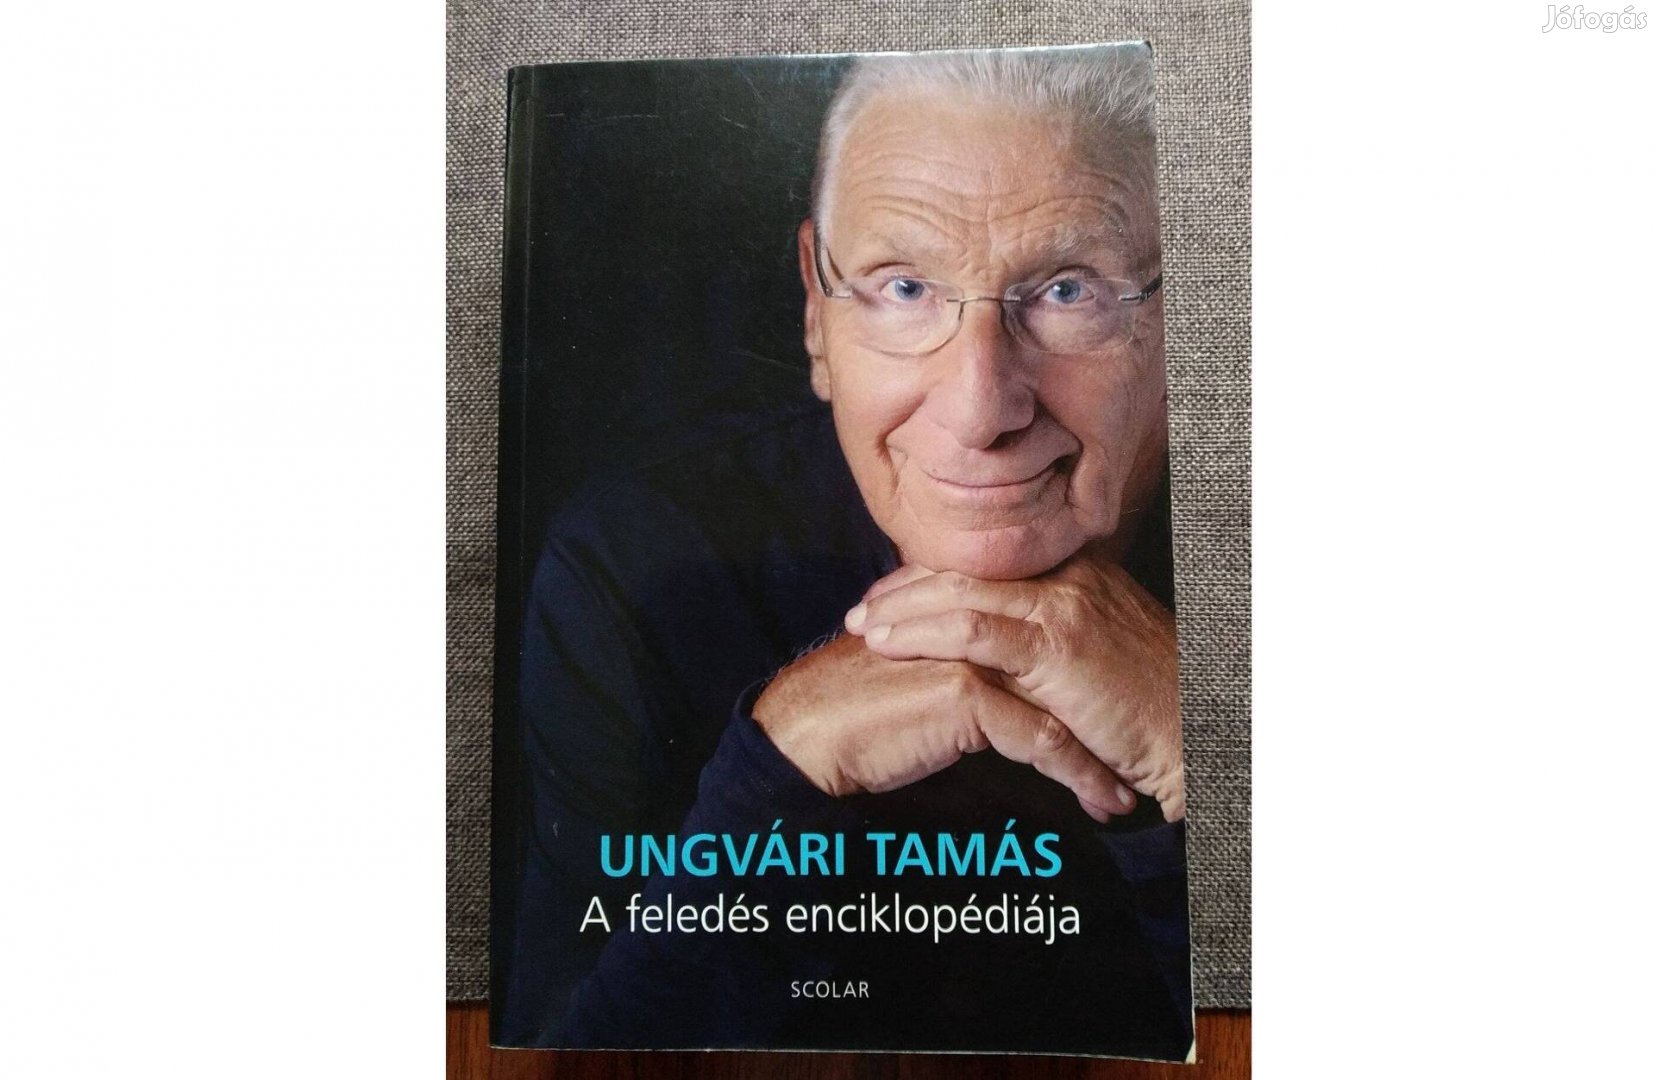 A feledés enciklopédiája Ungvári Tamás